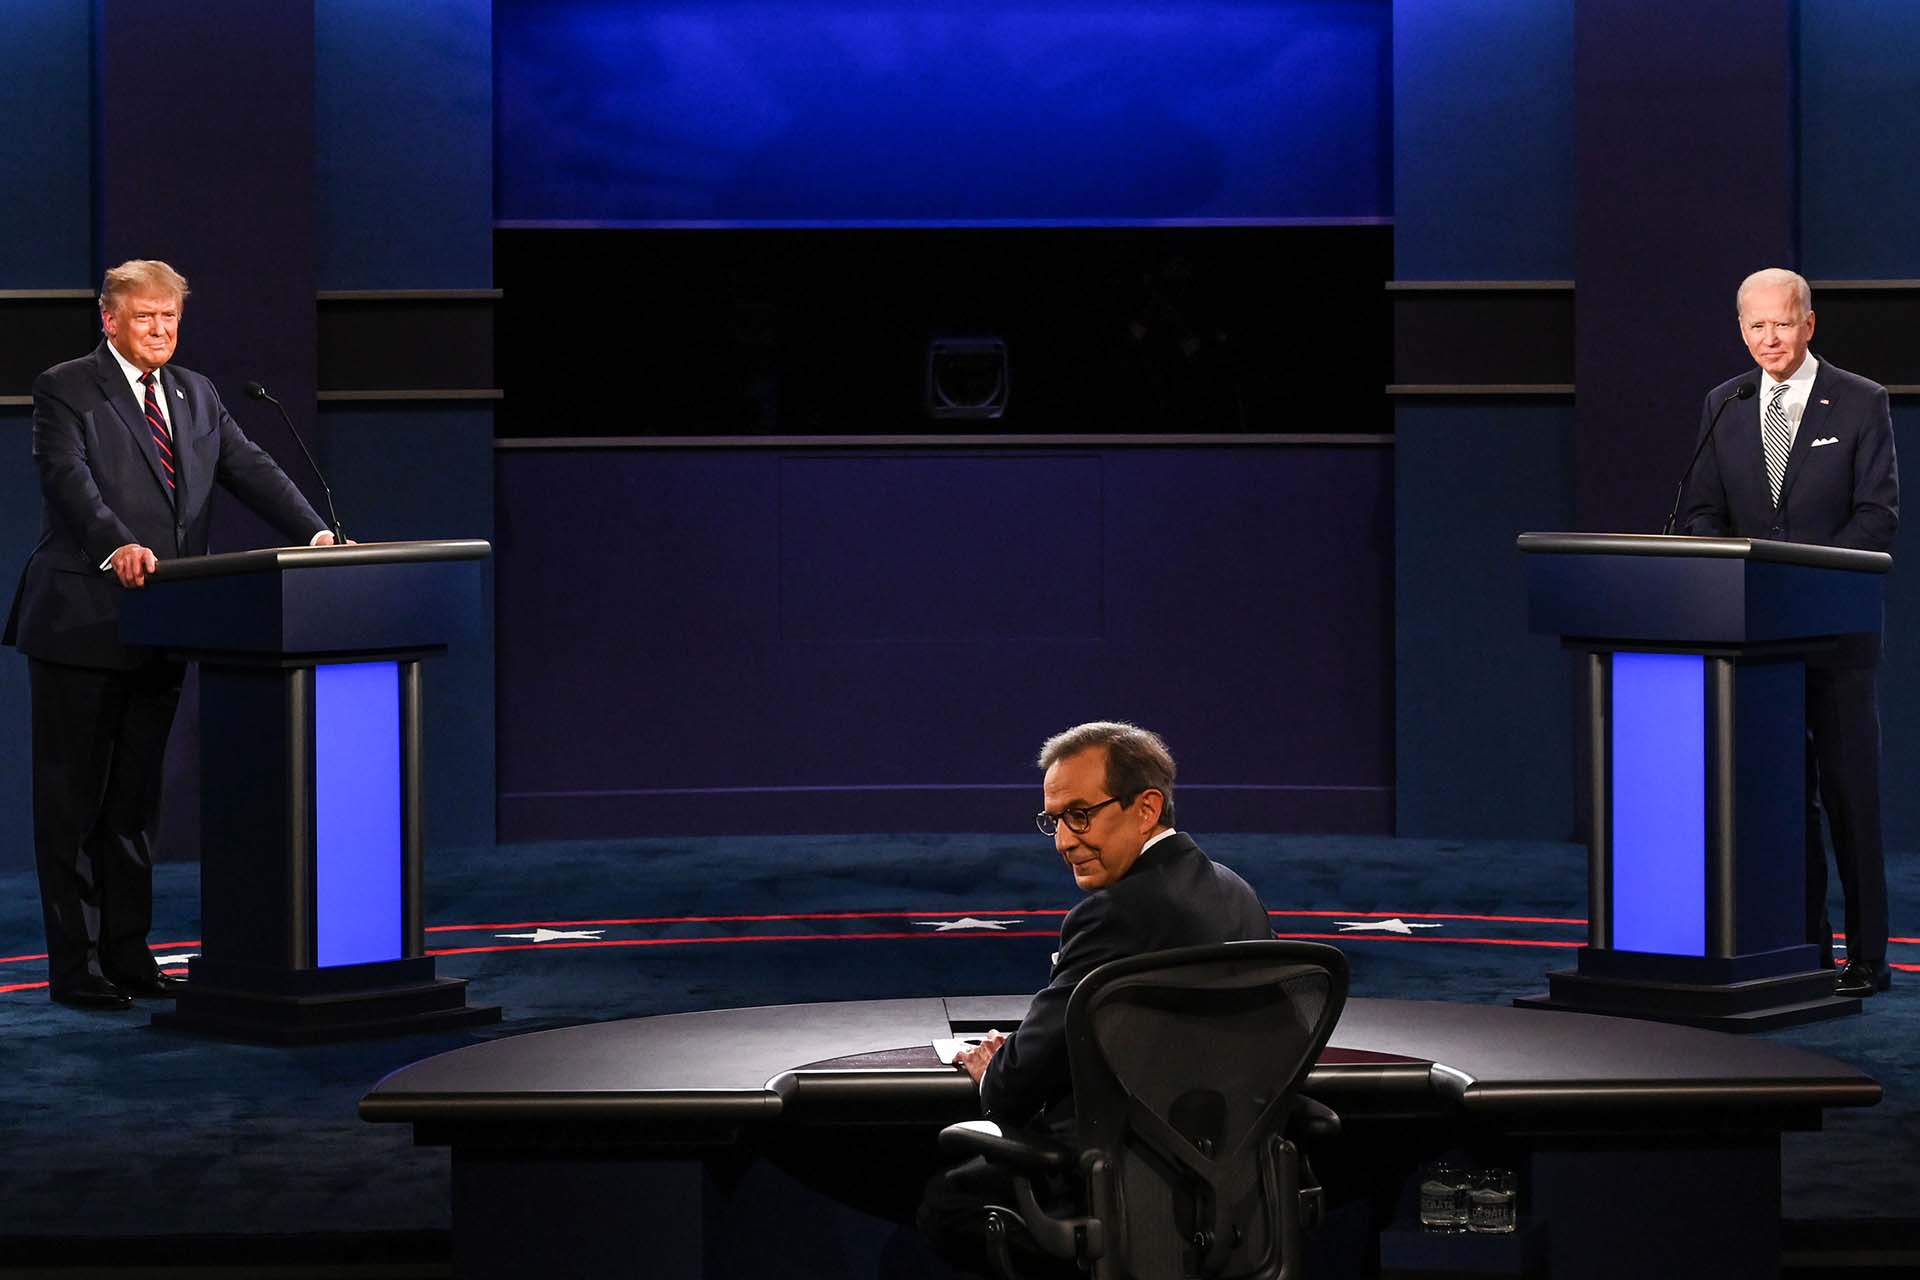 El debate estuvo marcado por las interrupciones y los ataques entre los candidatos 